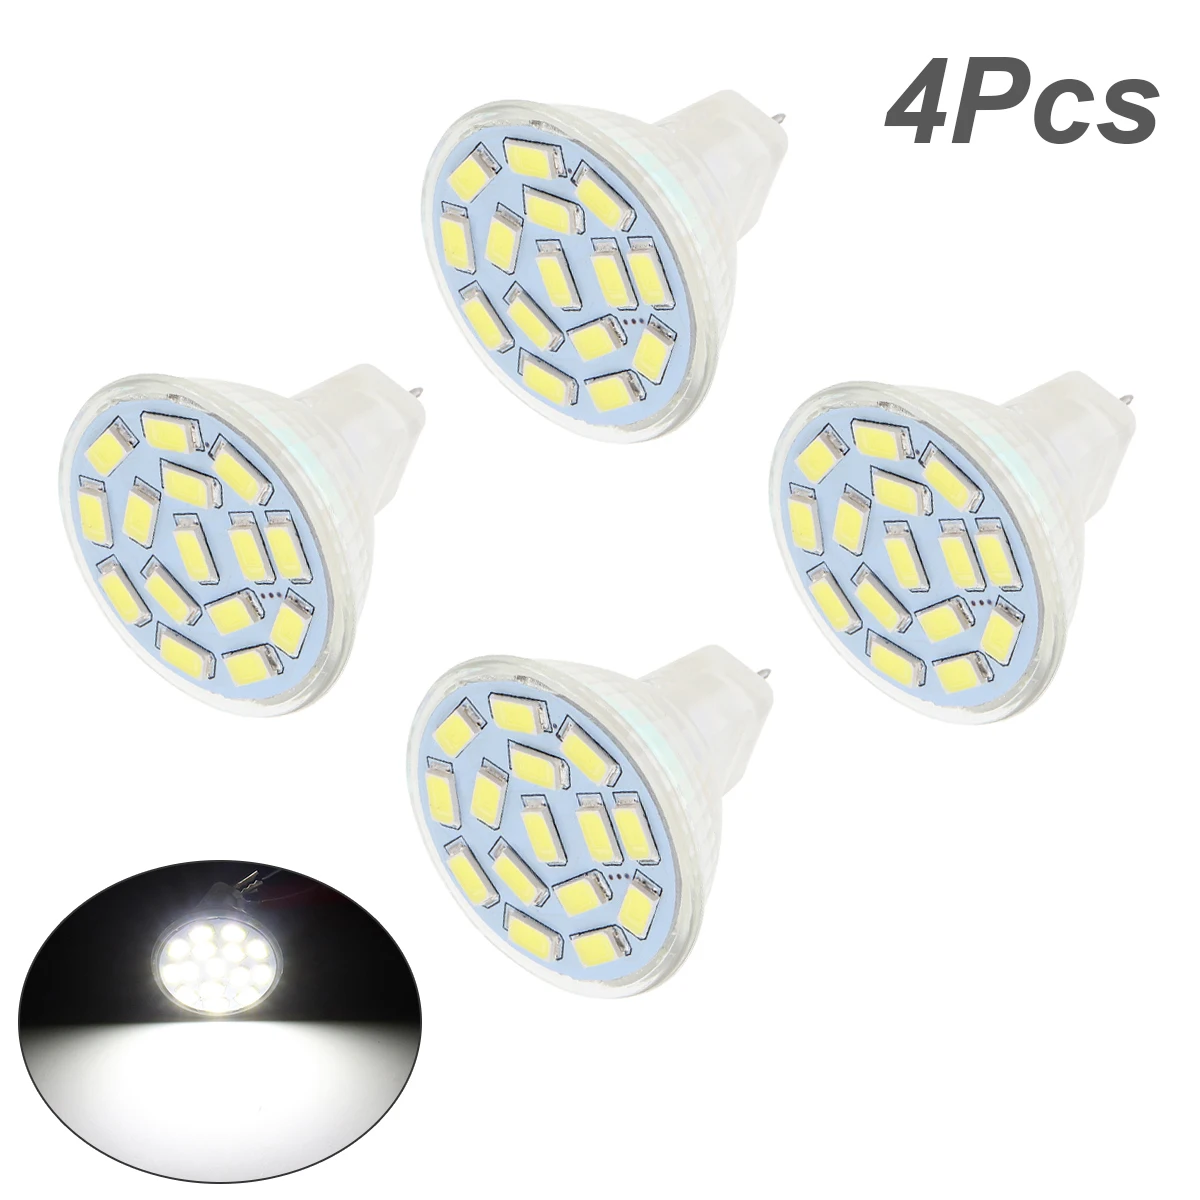 

4pcs Mr11 LED Lamp Cup 12V 3W 35MM Diameter 15 Lamp Beads White Light LED Bulbs LED Spotlight for Illuminating